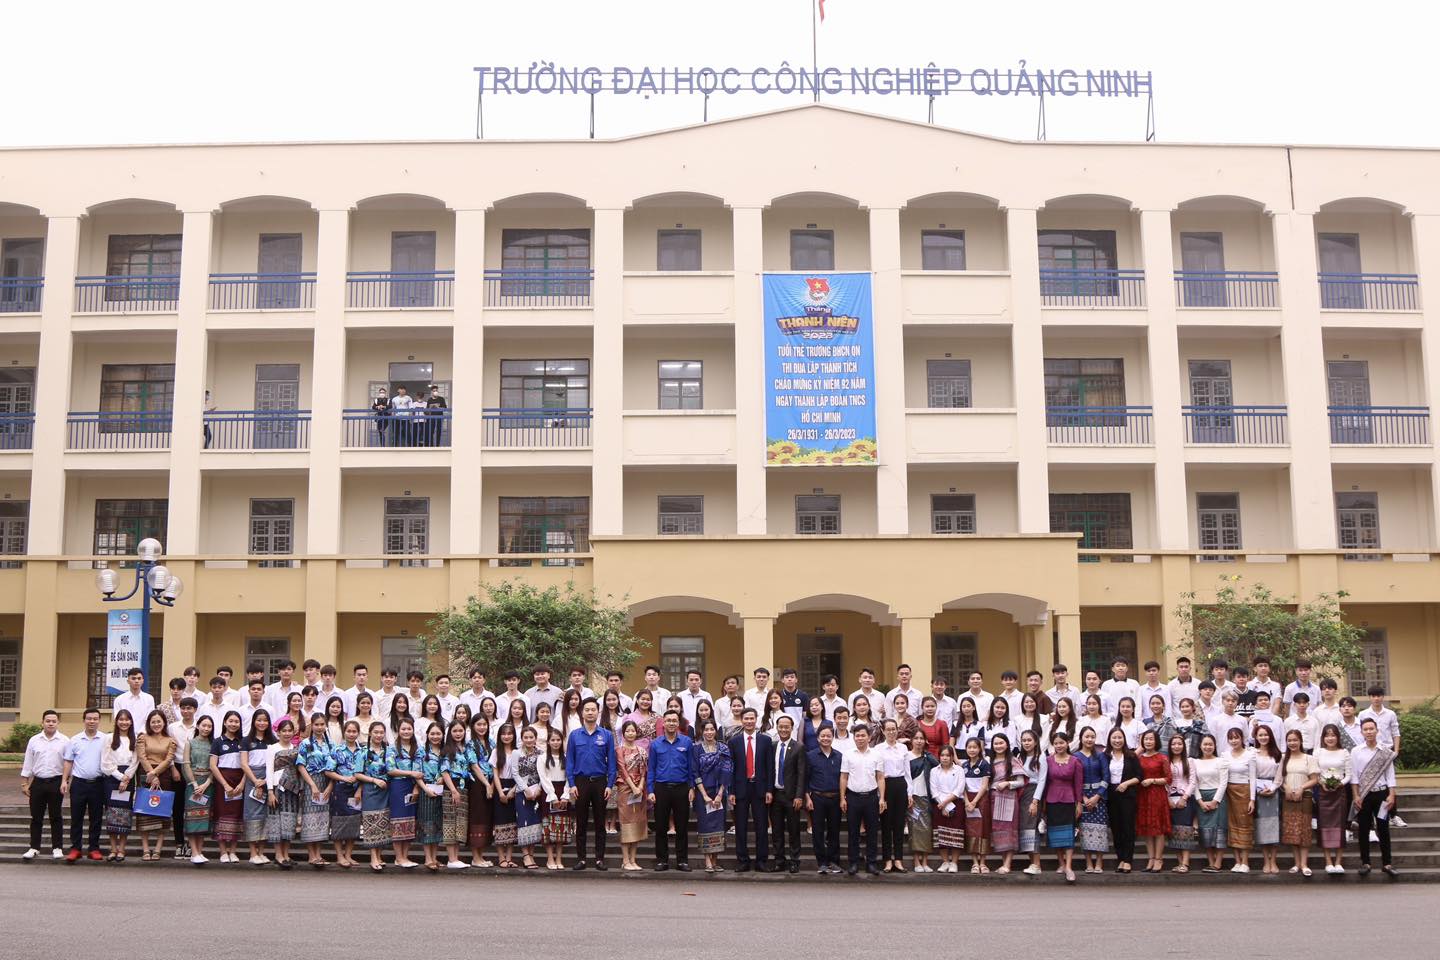 Đào tạo cho sinh viên Lào luôn được triển khai tốt  tại trường Đại học Công nghiệp Quảng Ninh